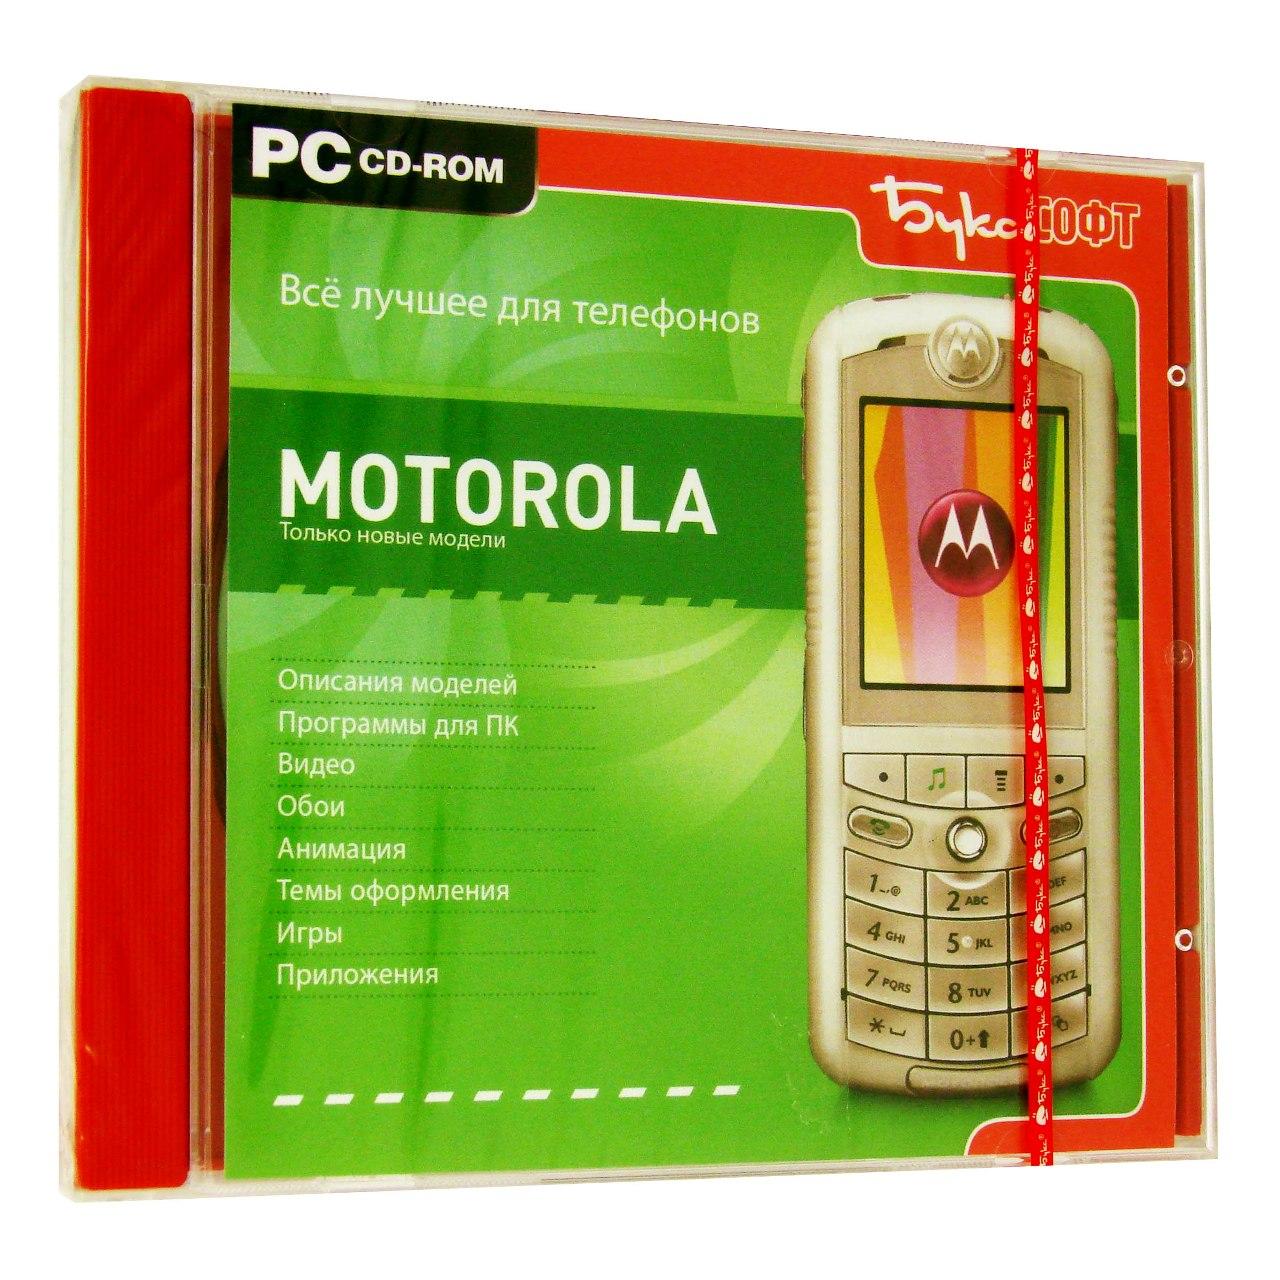 Компьютерный компакт-диск Все лучшее для телефонов Motorola (PC), фирма "Бука", 1CD